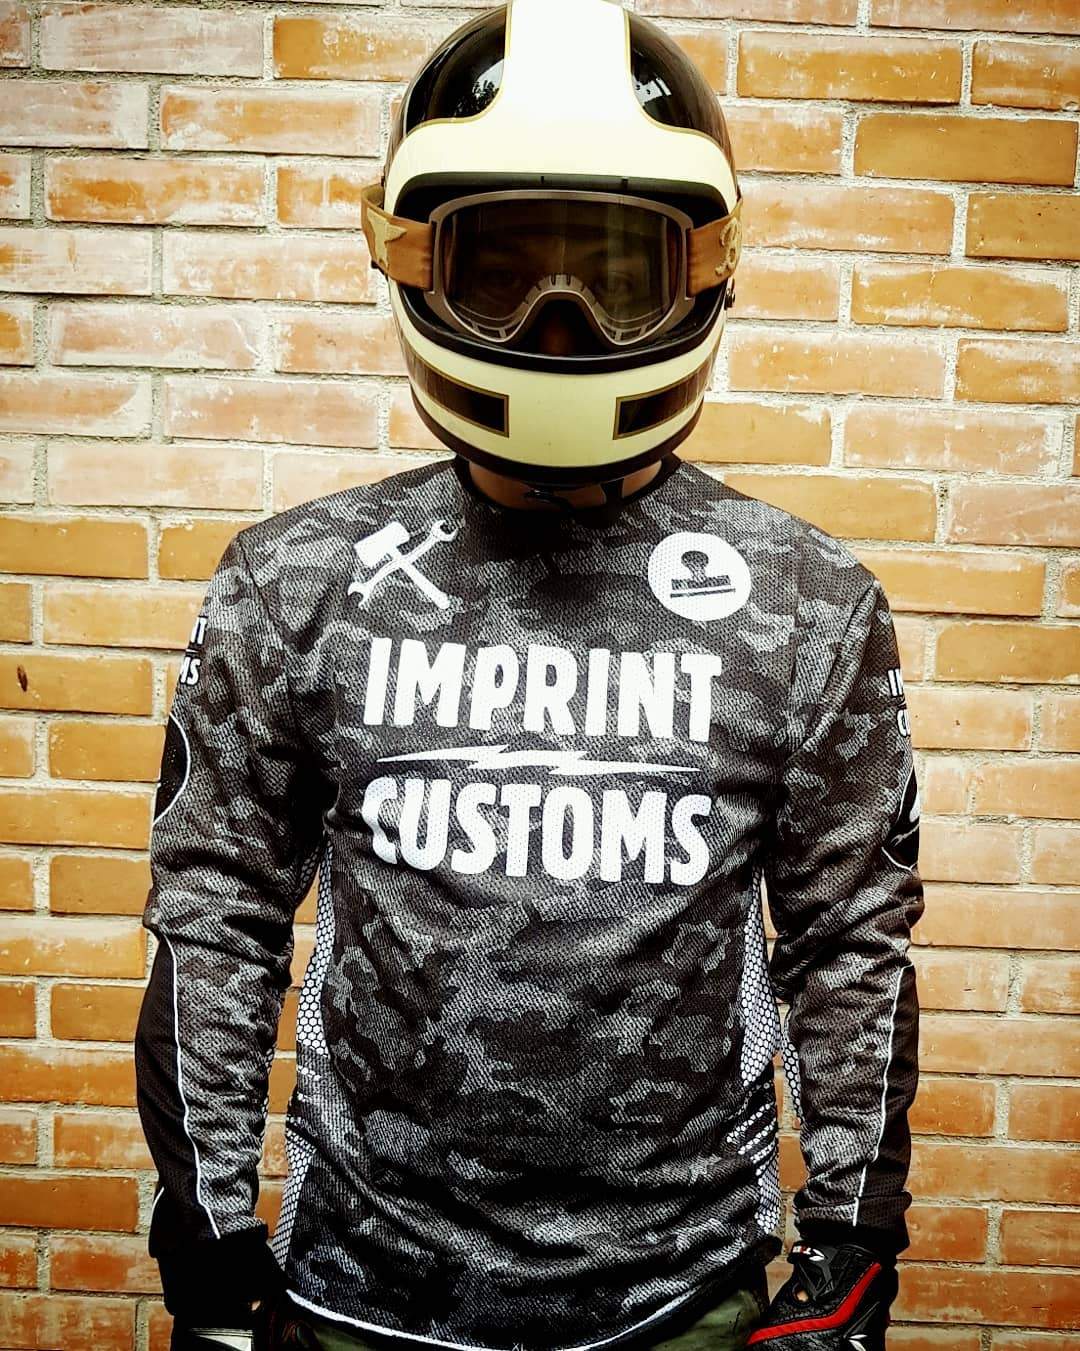 Imprint Customs - LightCamo Riding Jersey